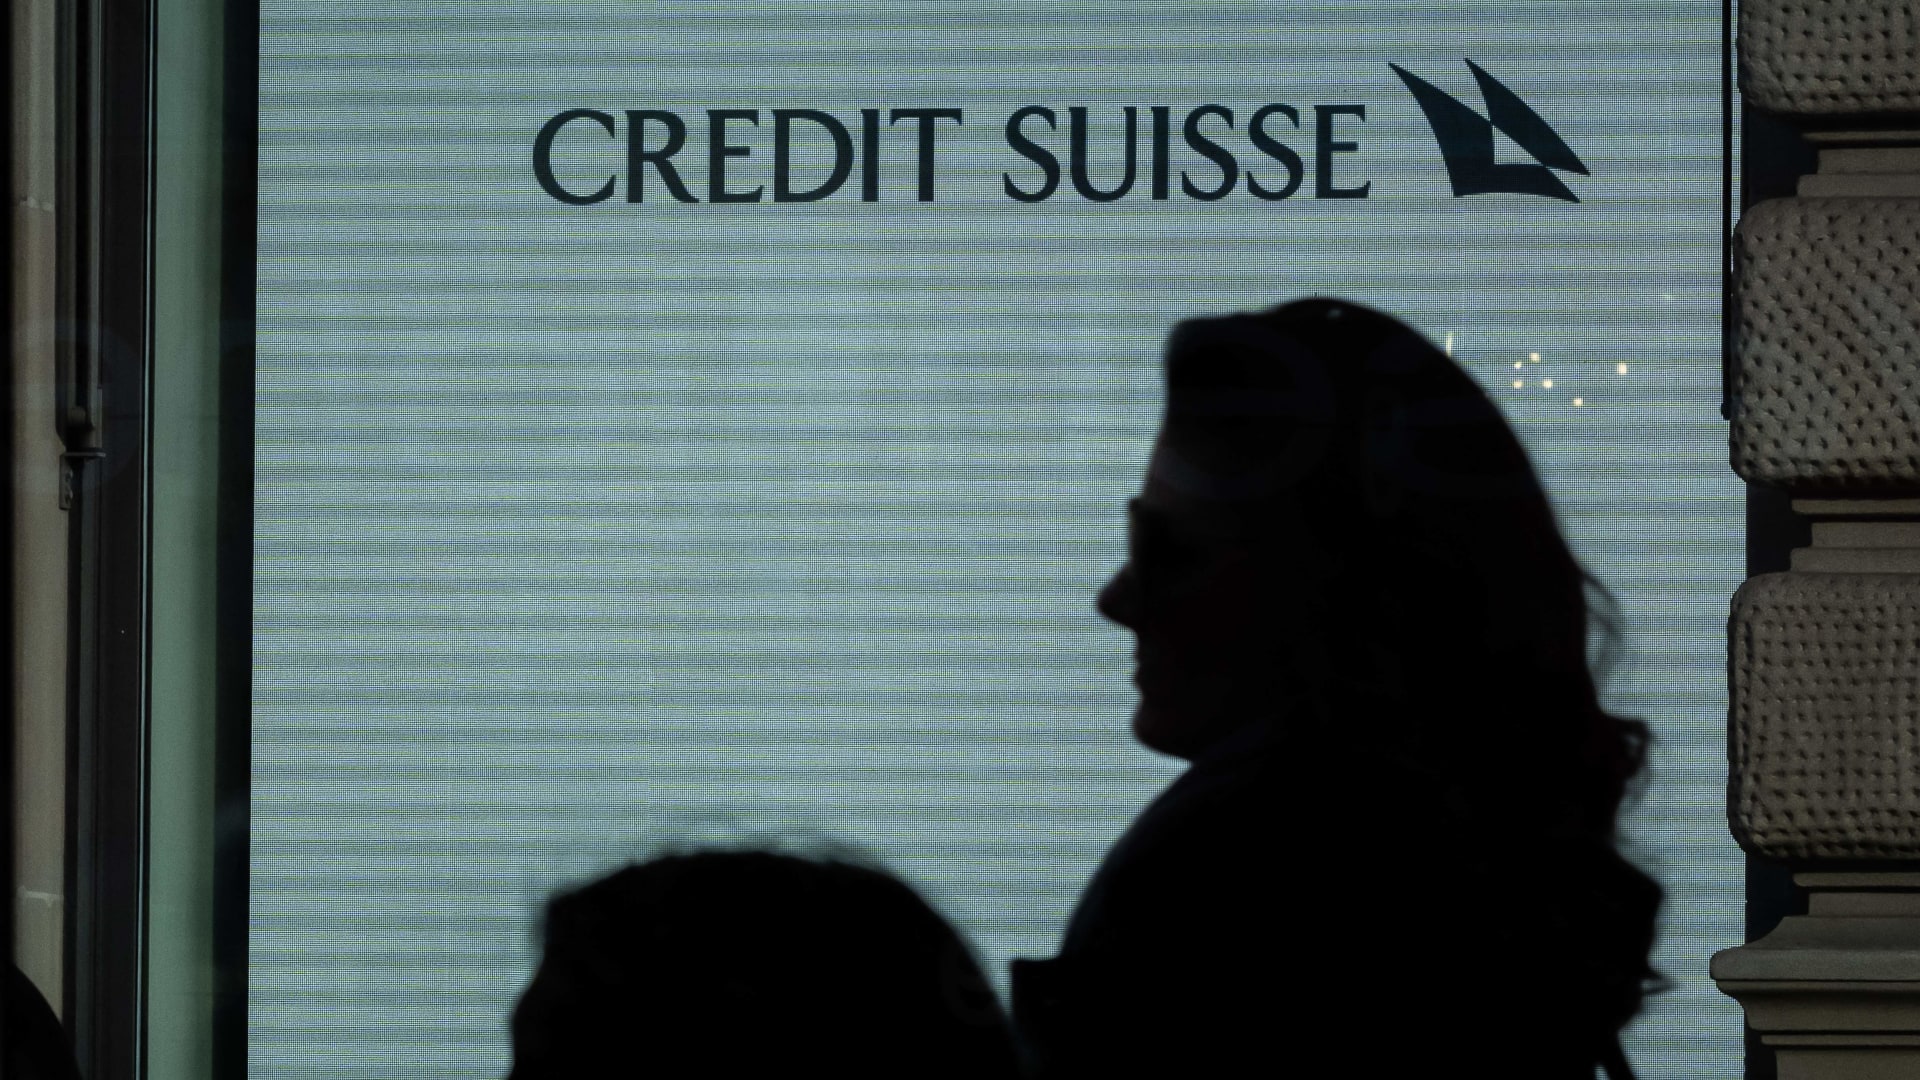 Credit Suisse bondholders prepare lawsuit after contentious $17 billion writedown